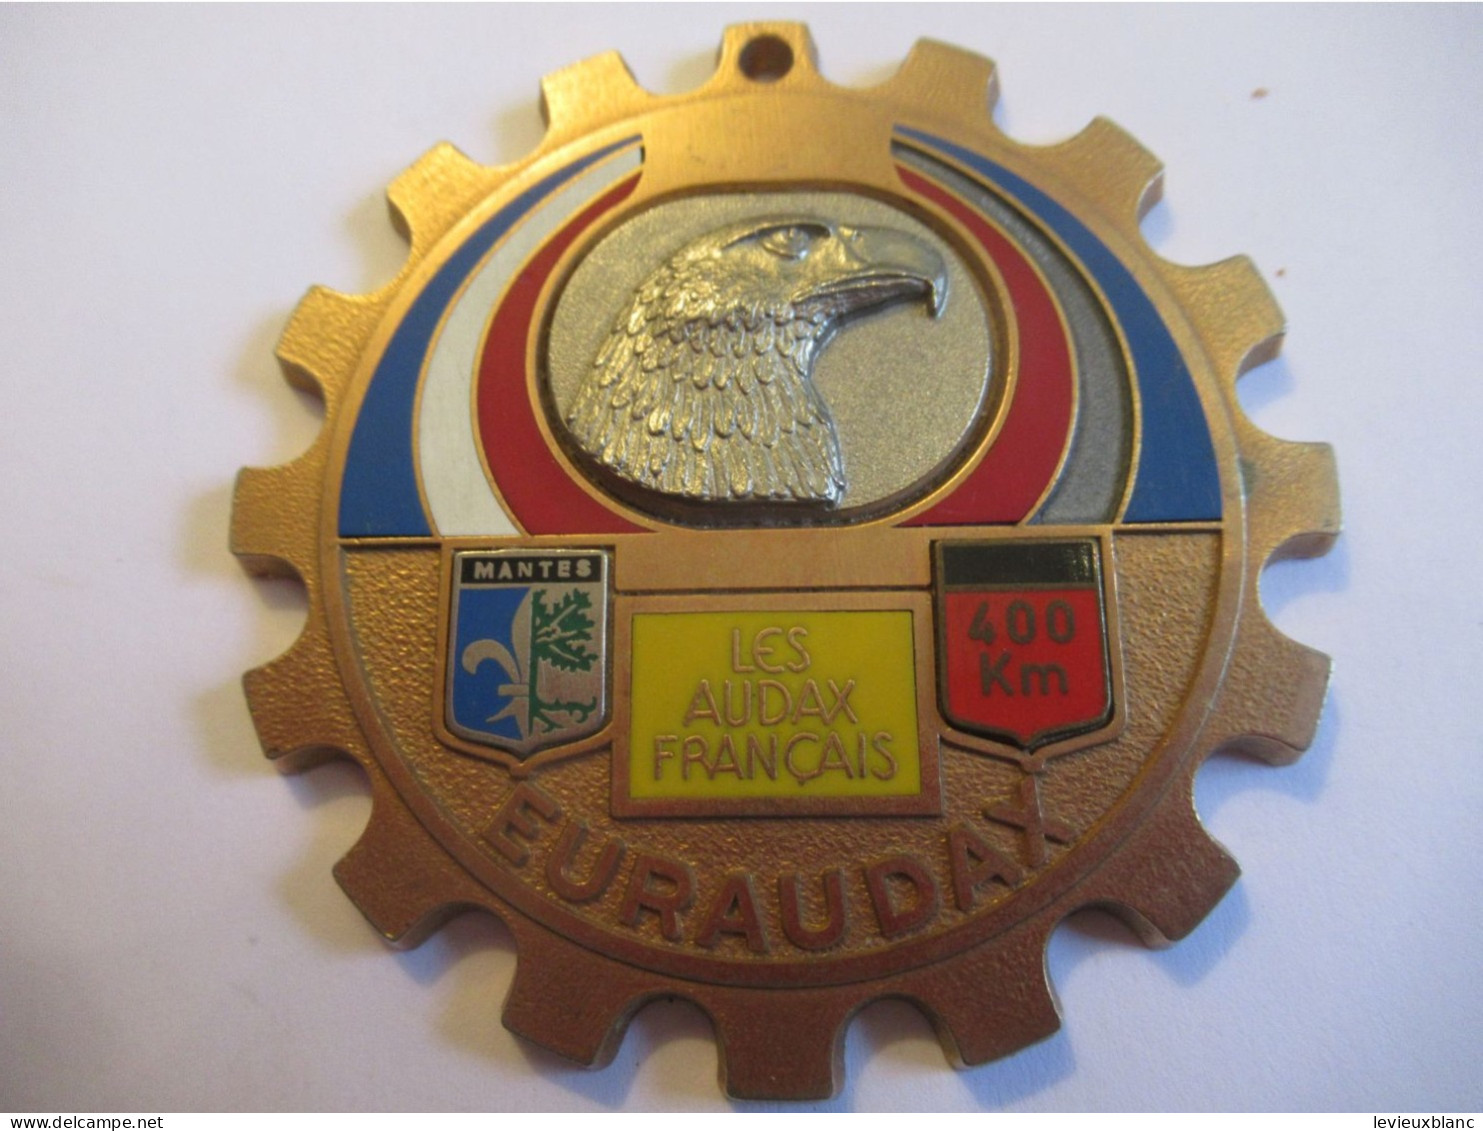 Bicyclette / EURAUDAX/Bronze Doré  Cloisonné/Les Audax Français/Tête D'Aigle/ Mantes/ 400 Km/1979     SPO436 - Cyclisme